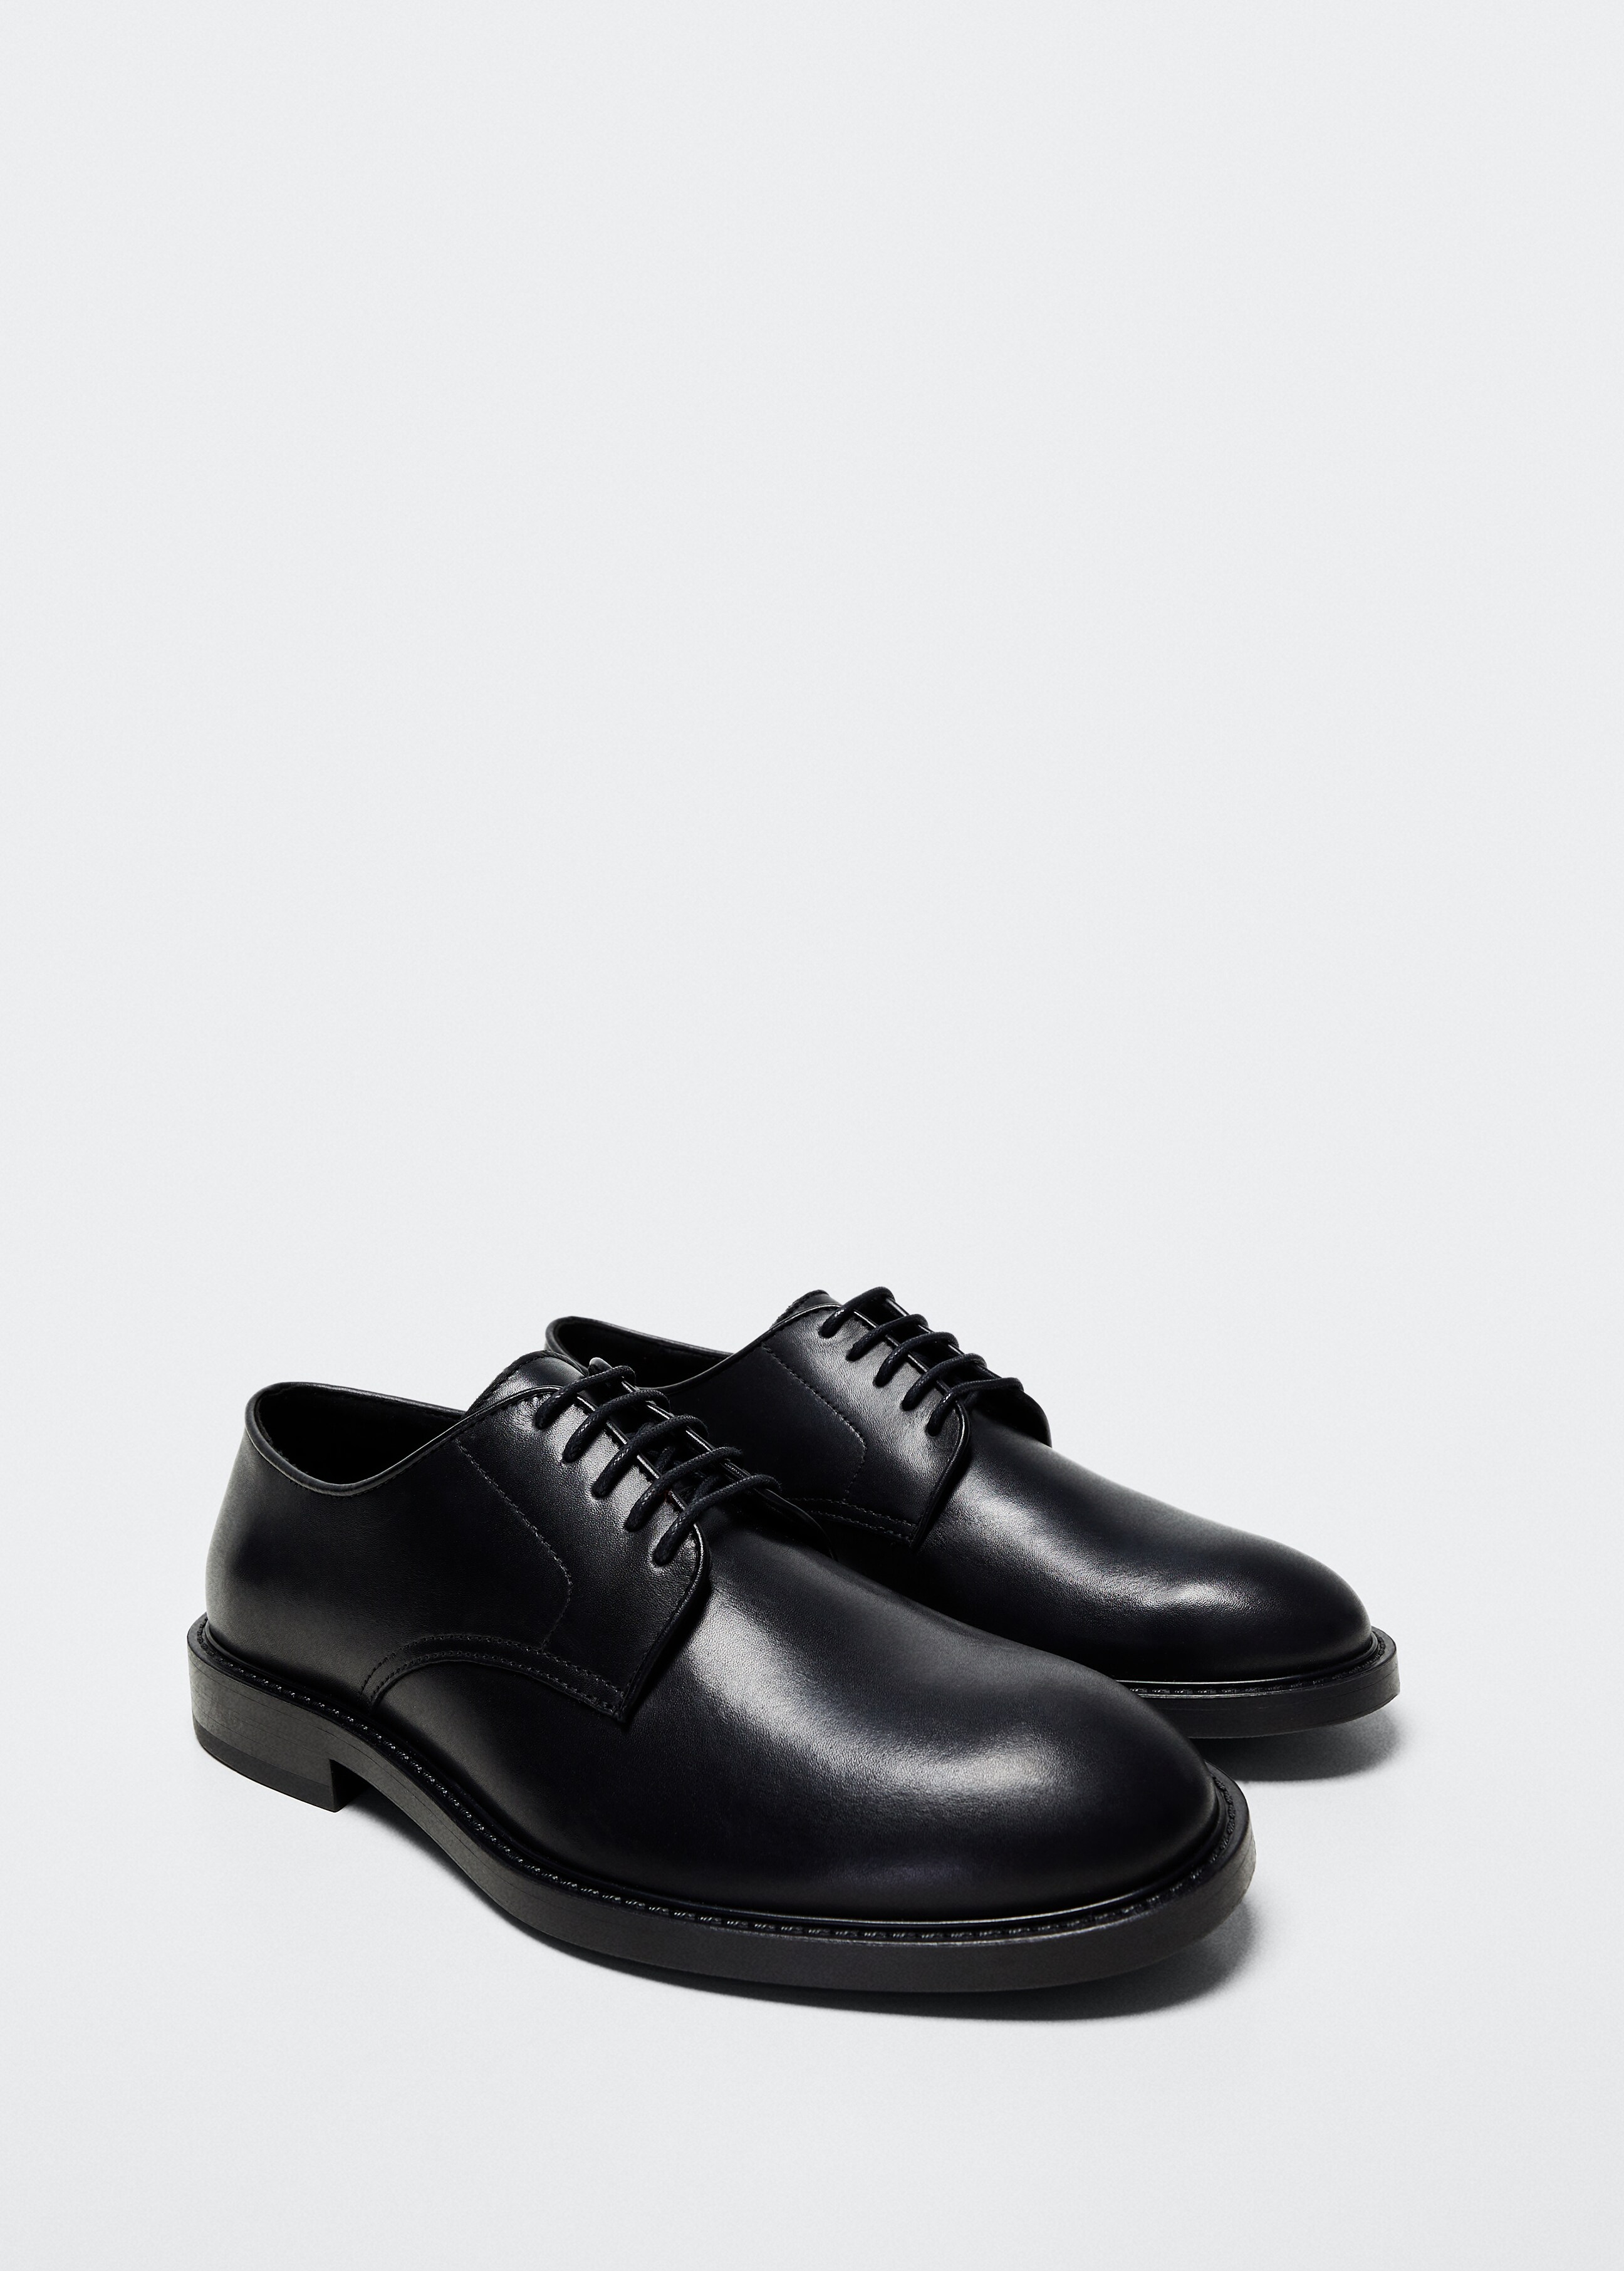 Leather suit shoes - Medium plane